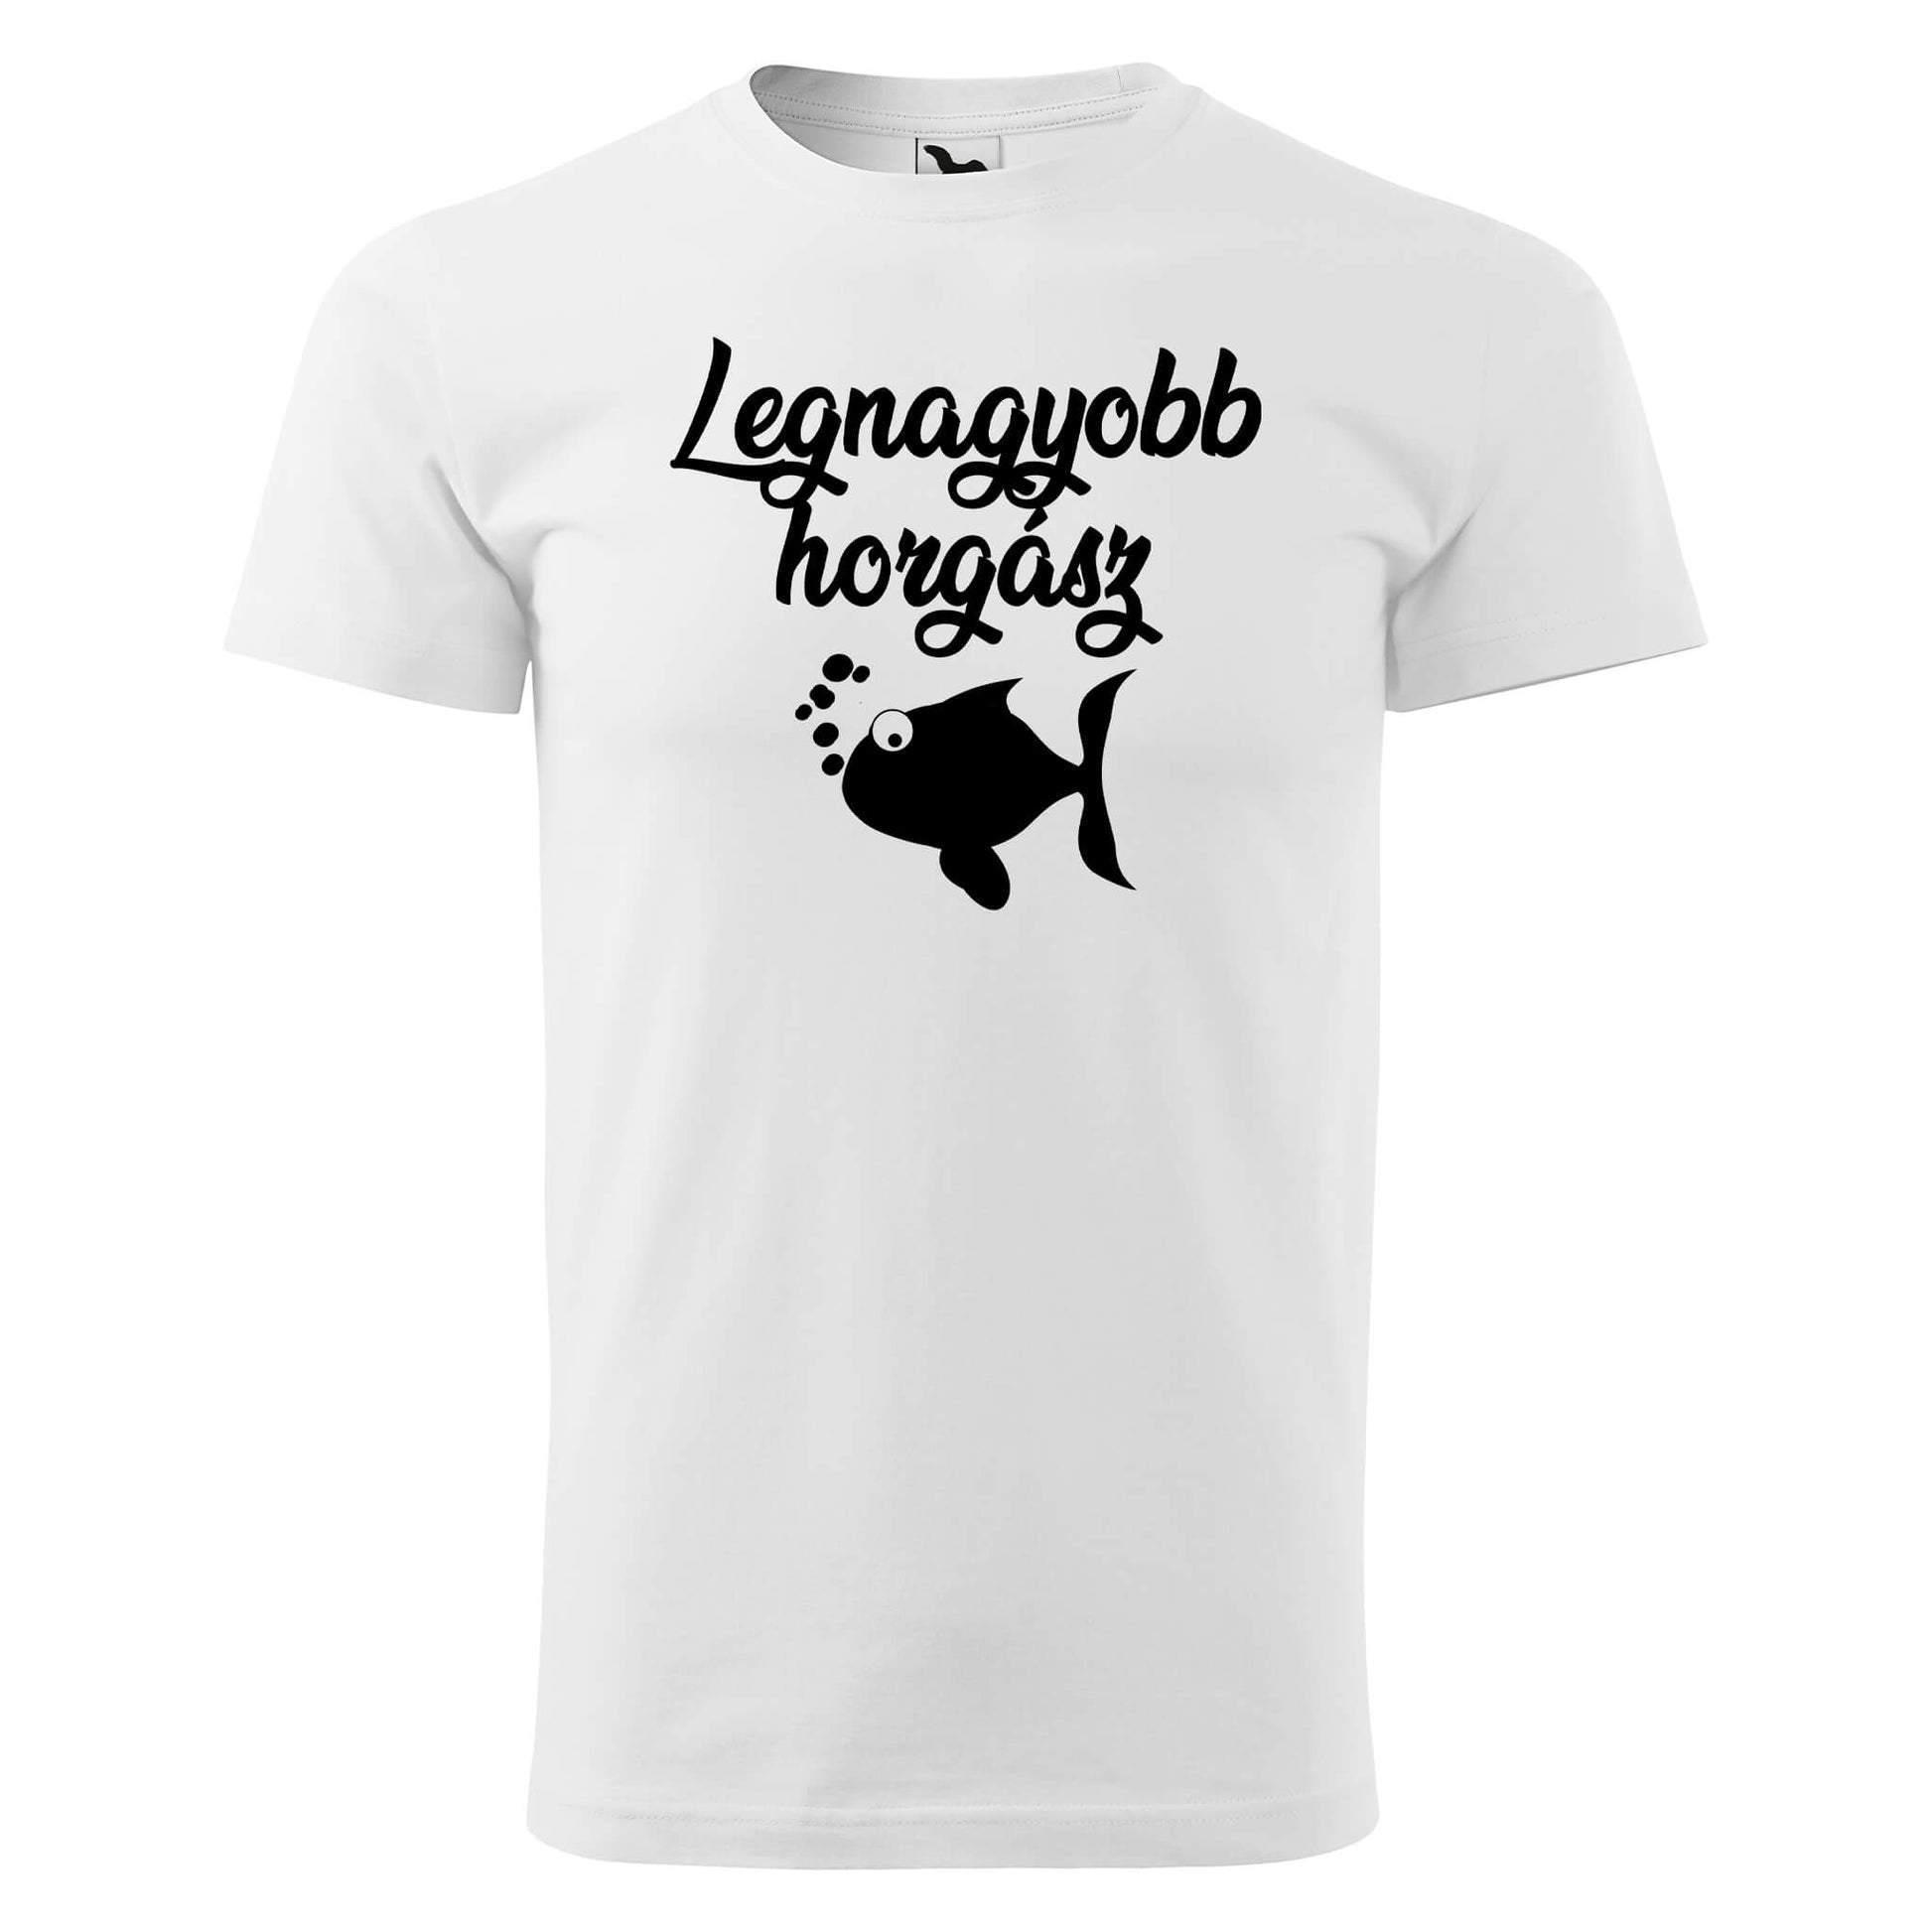 T-shirt - Legnagyobb horgász - rvdesignprint